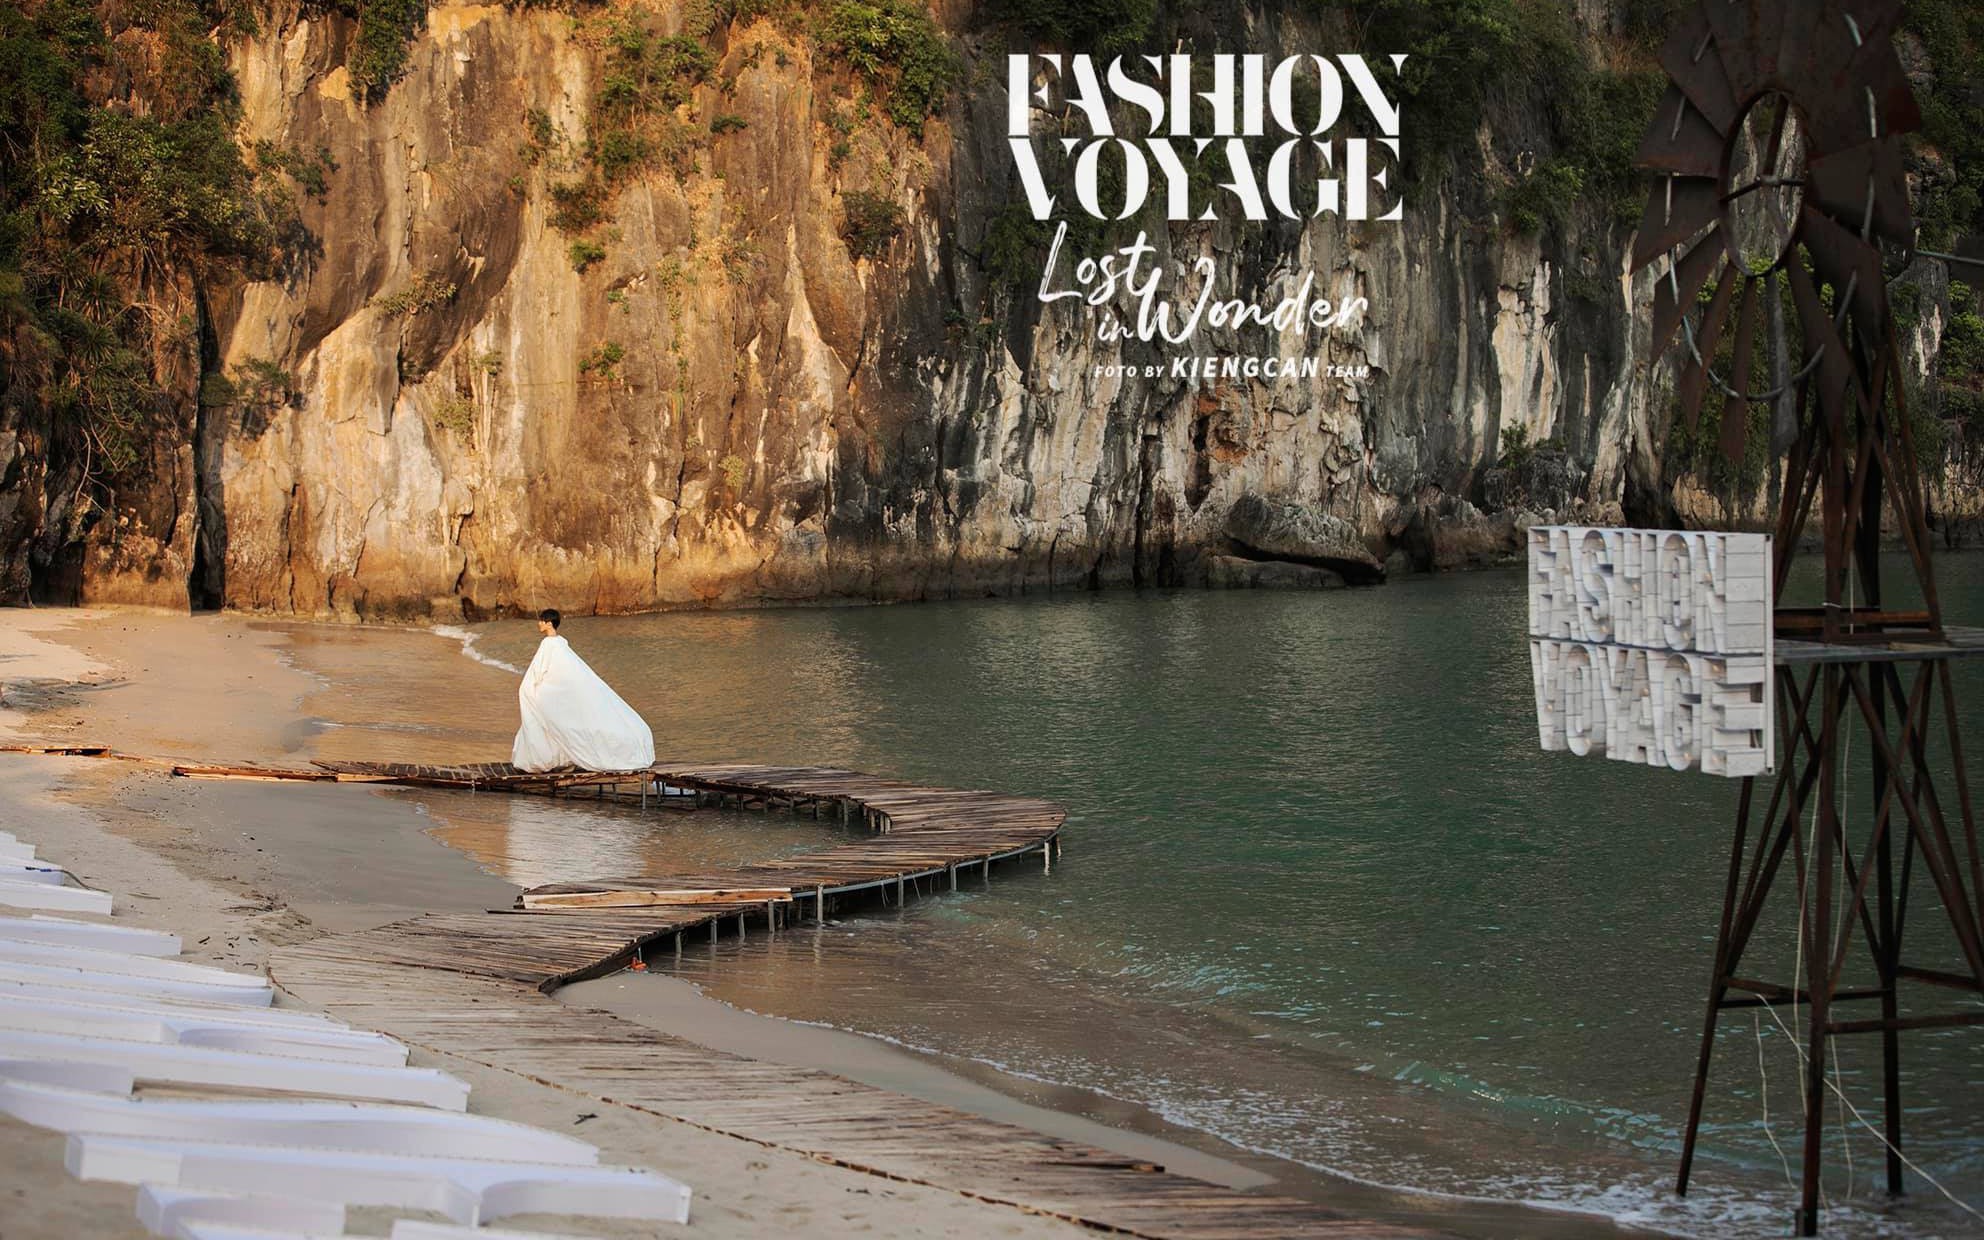 Trình diễn trên đảo hoang sơ, Fashion Voyage có những khoảnh khắc đẹp nín thở, tôn trọn vẹn vẻ đẹp kỳ quan của Vịnh Hạ Long